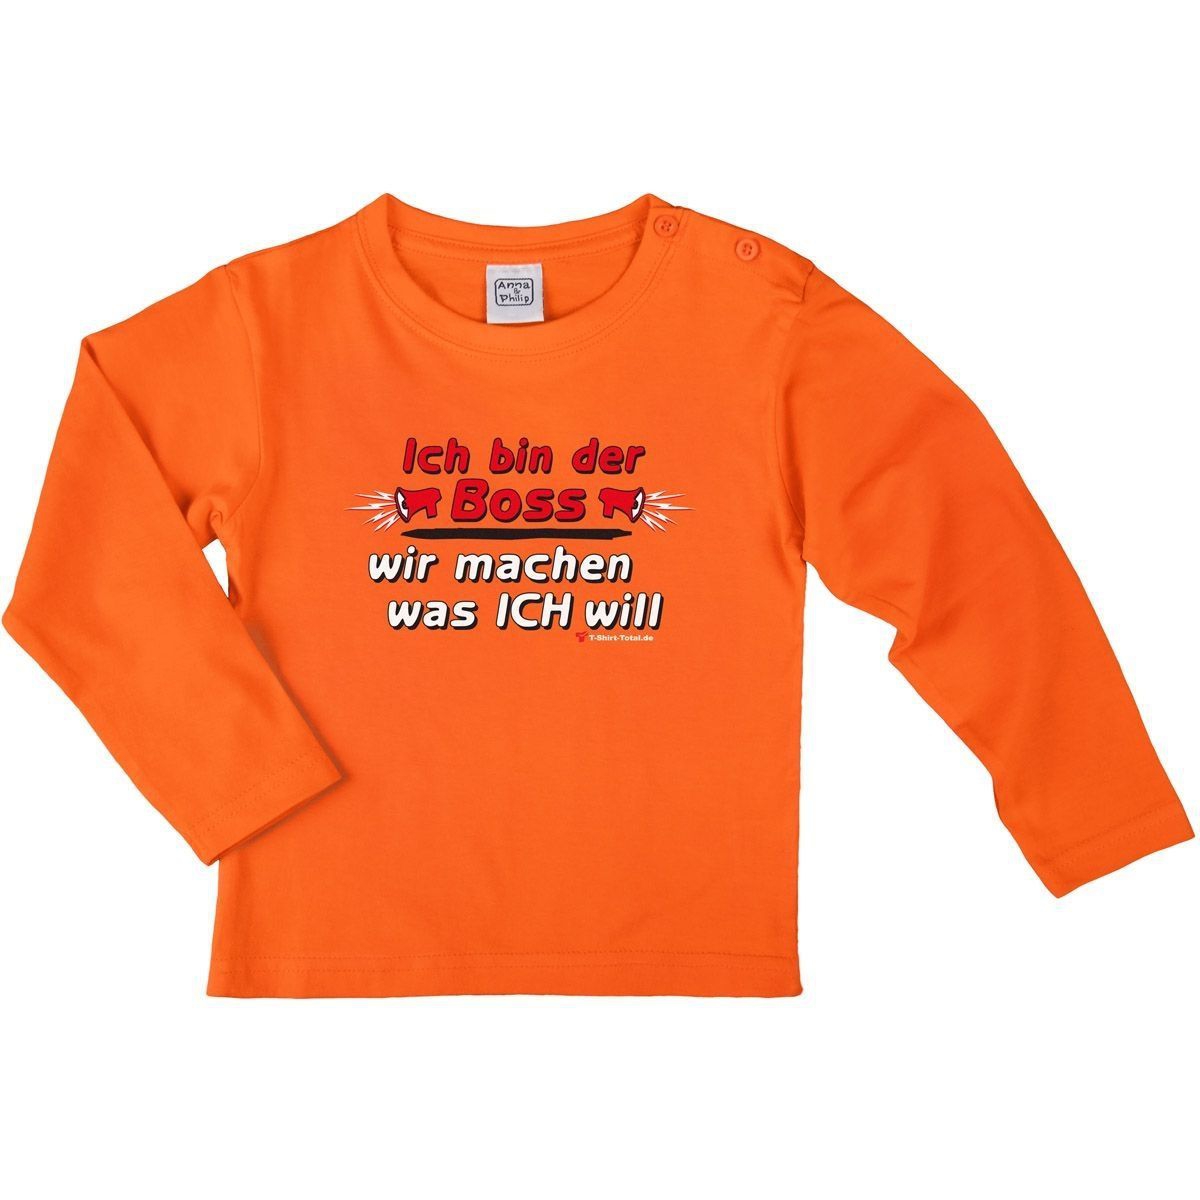 Ich bin der Boss Kinder Langarm Shirt orange 122 / 128